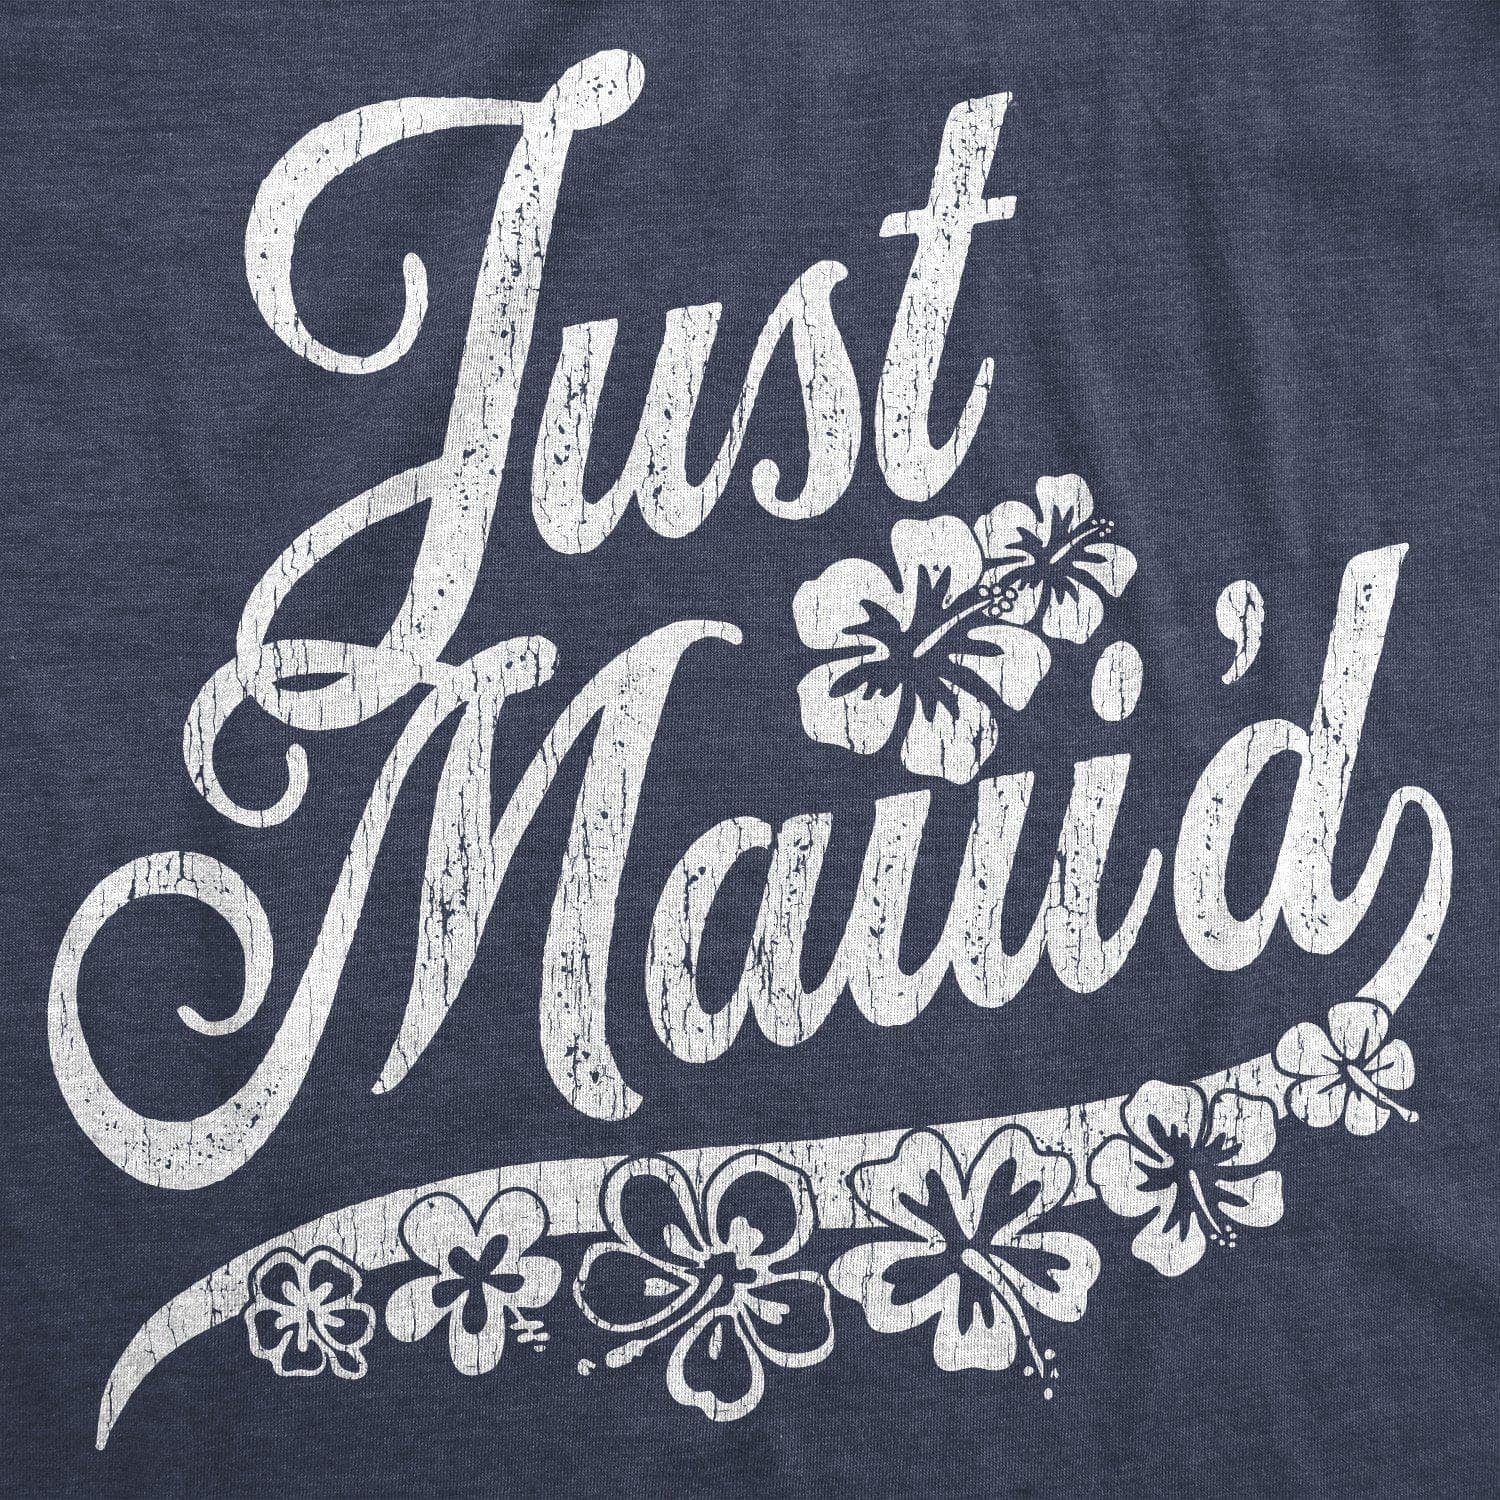 Just Maui'd Men's Tshirt  -  Crazy Dog T-Shirts